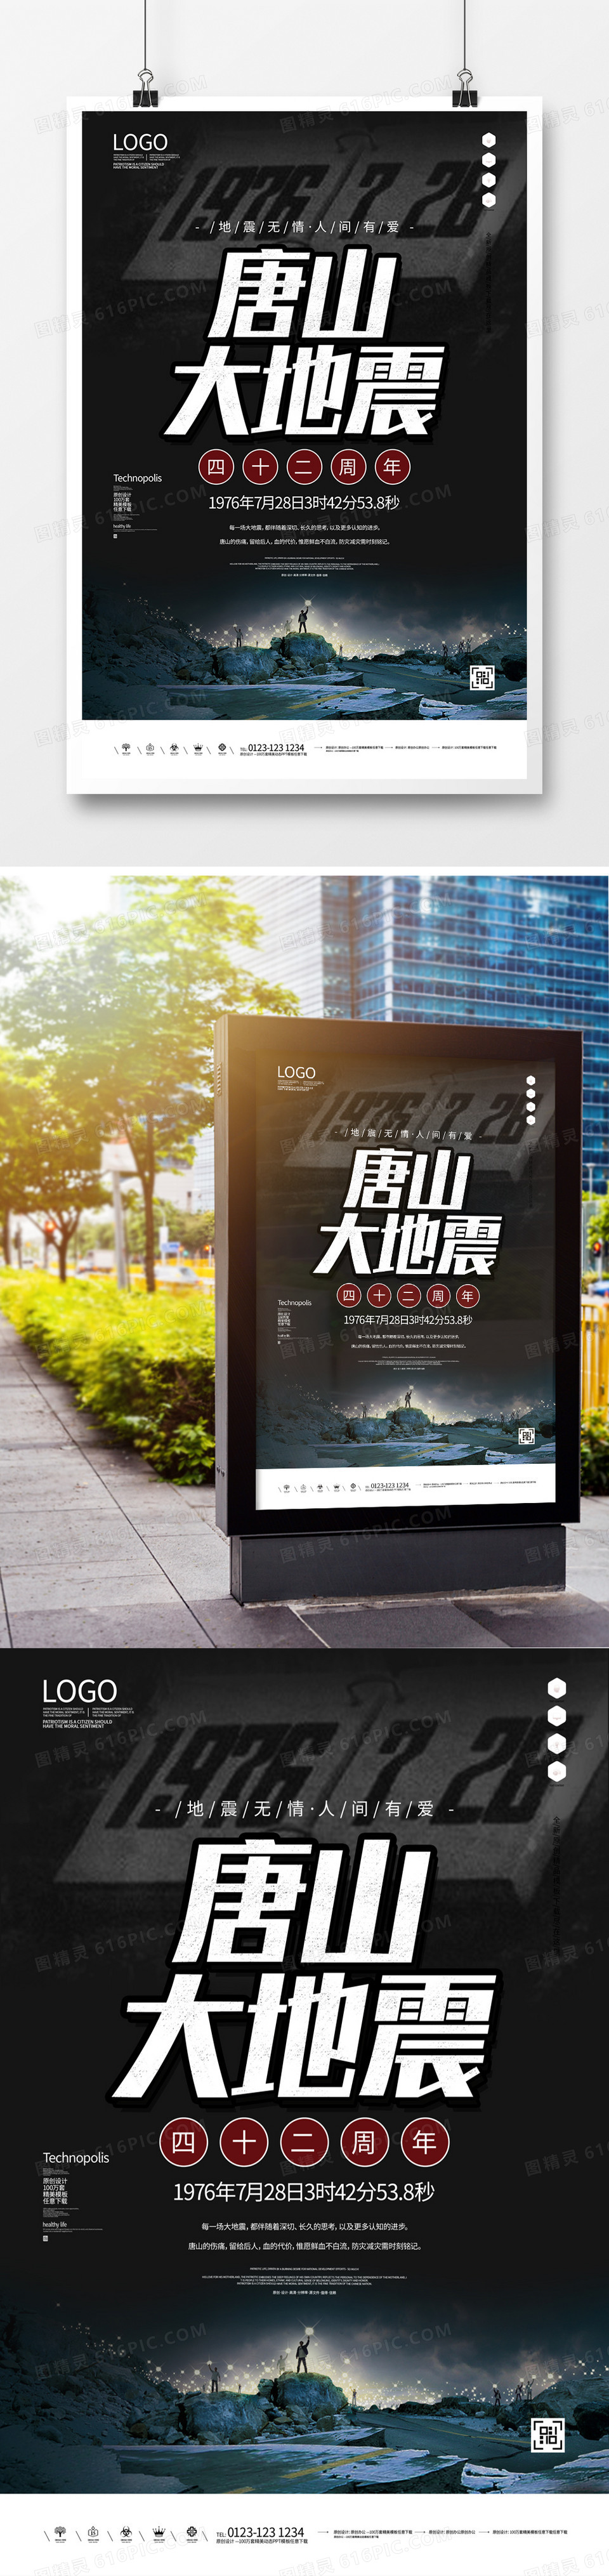 唐山大地震原创宣传海报广告模板设计